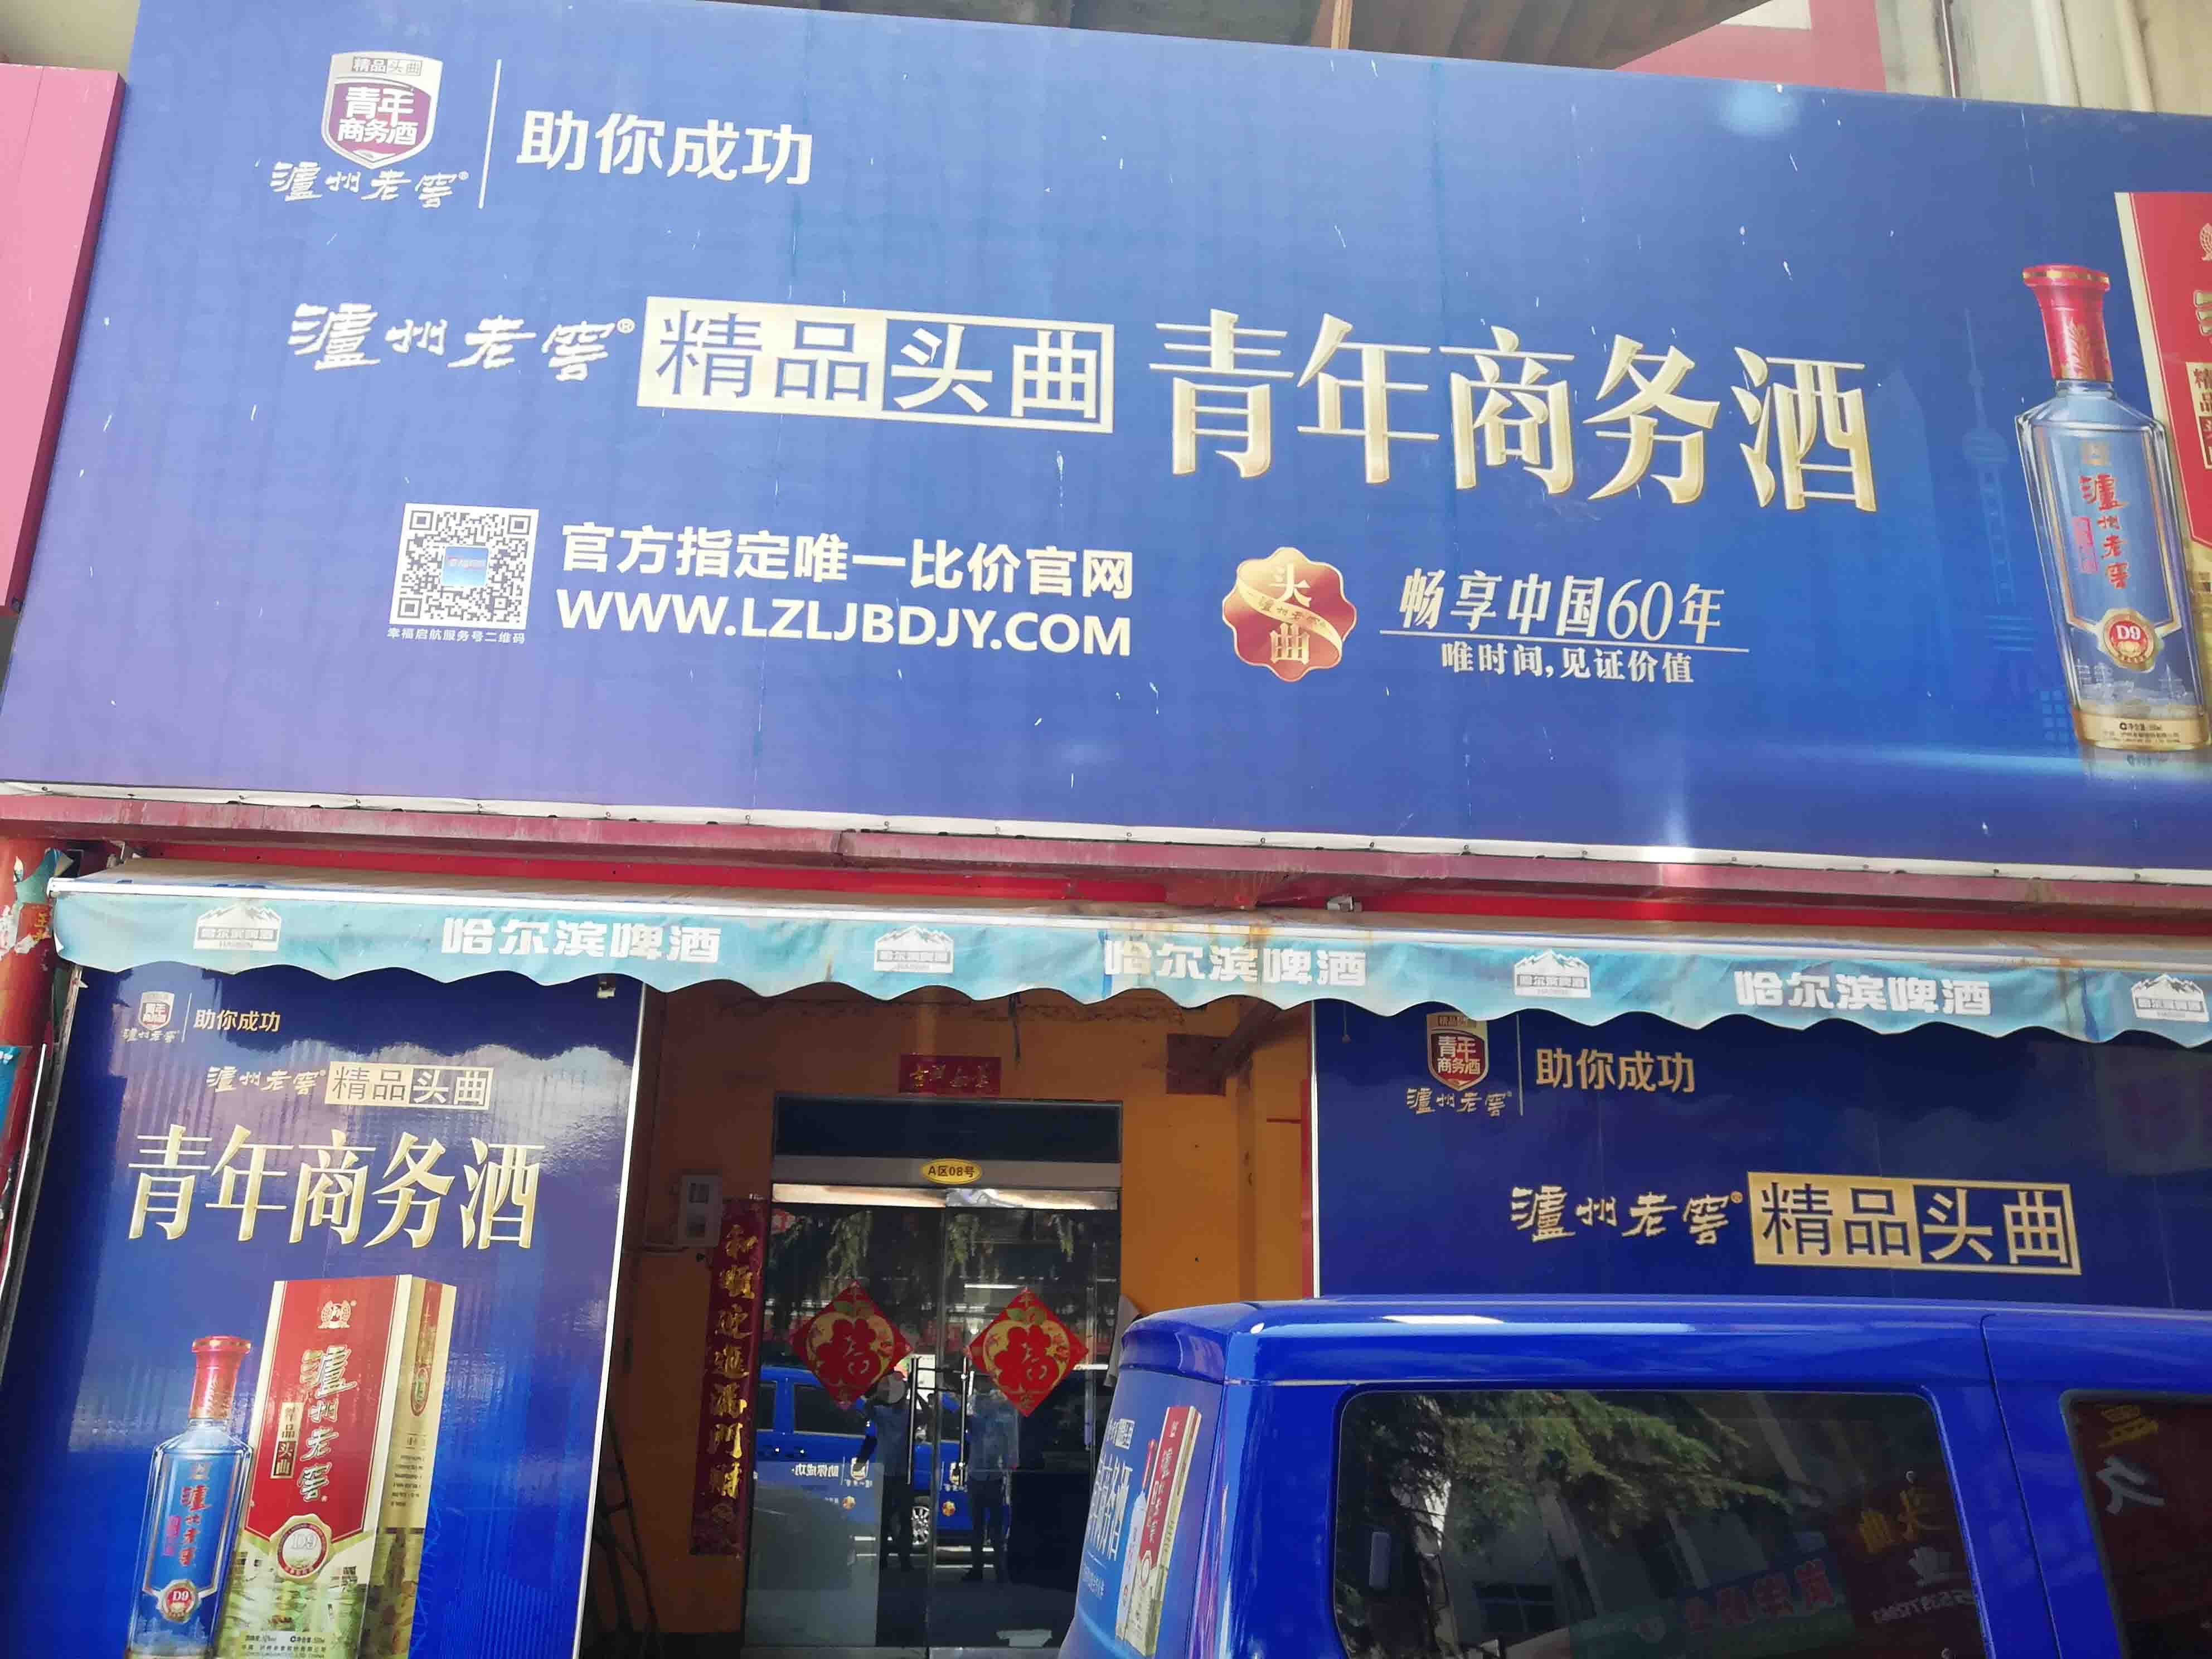 上海市场南街经济型写字楼在洛阳出租，旨在为预算有限的企业提供实惠的选择。我们的列表包含多种价格合理的高端办公空间